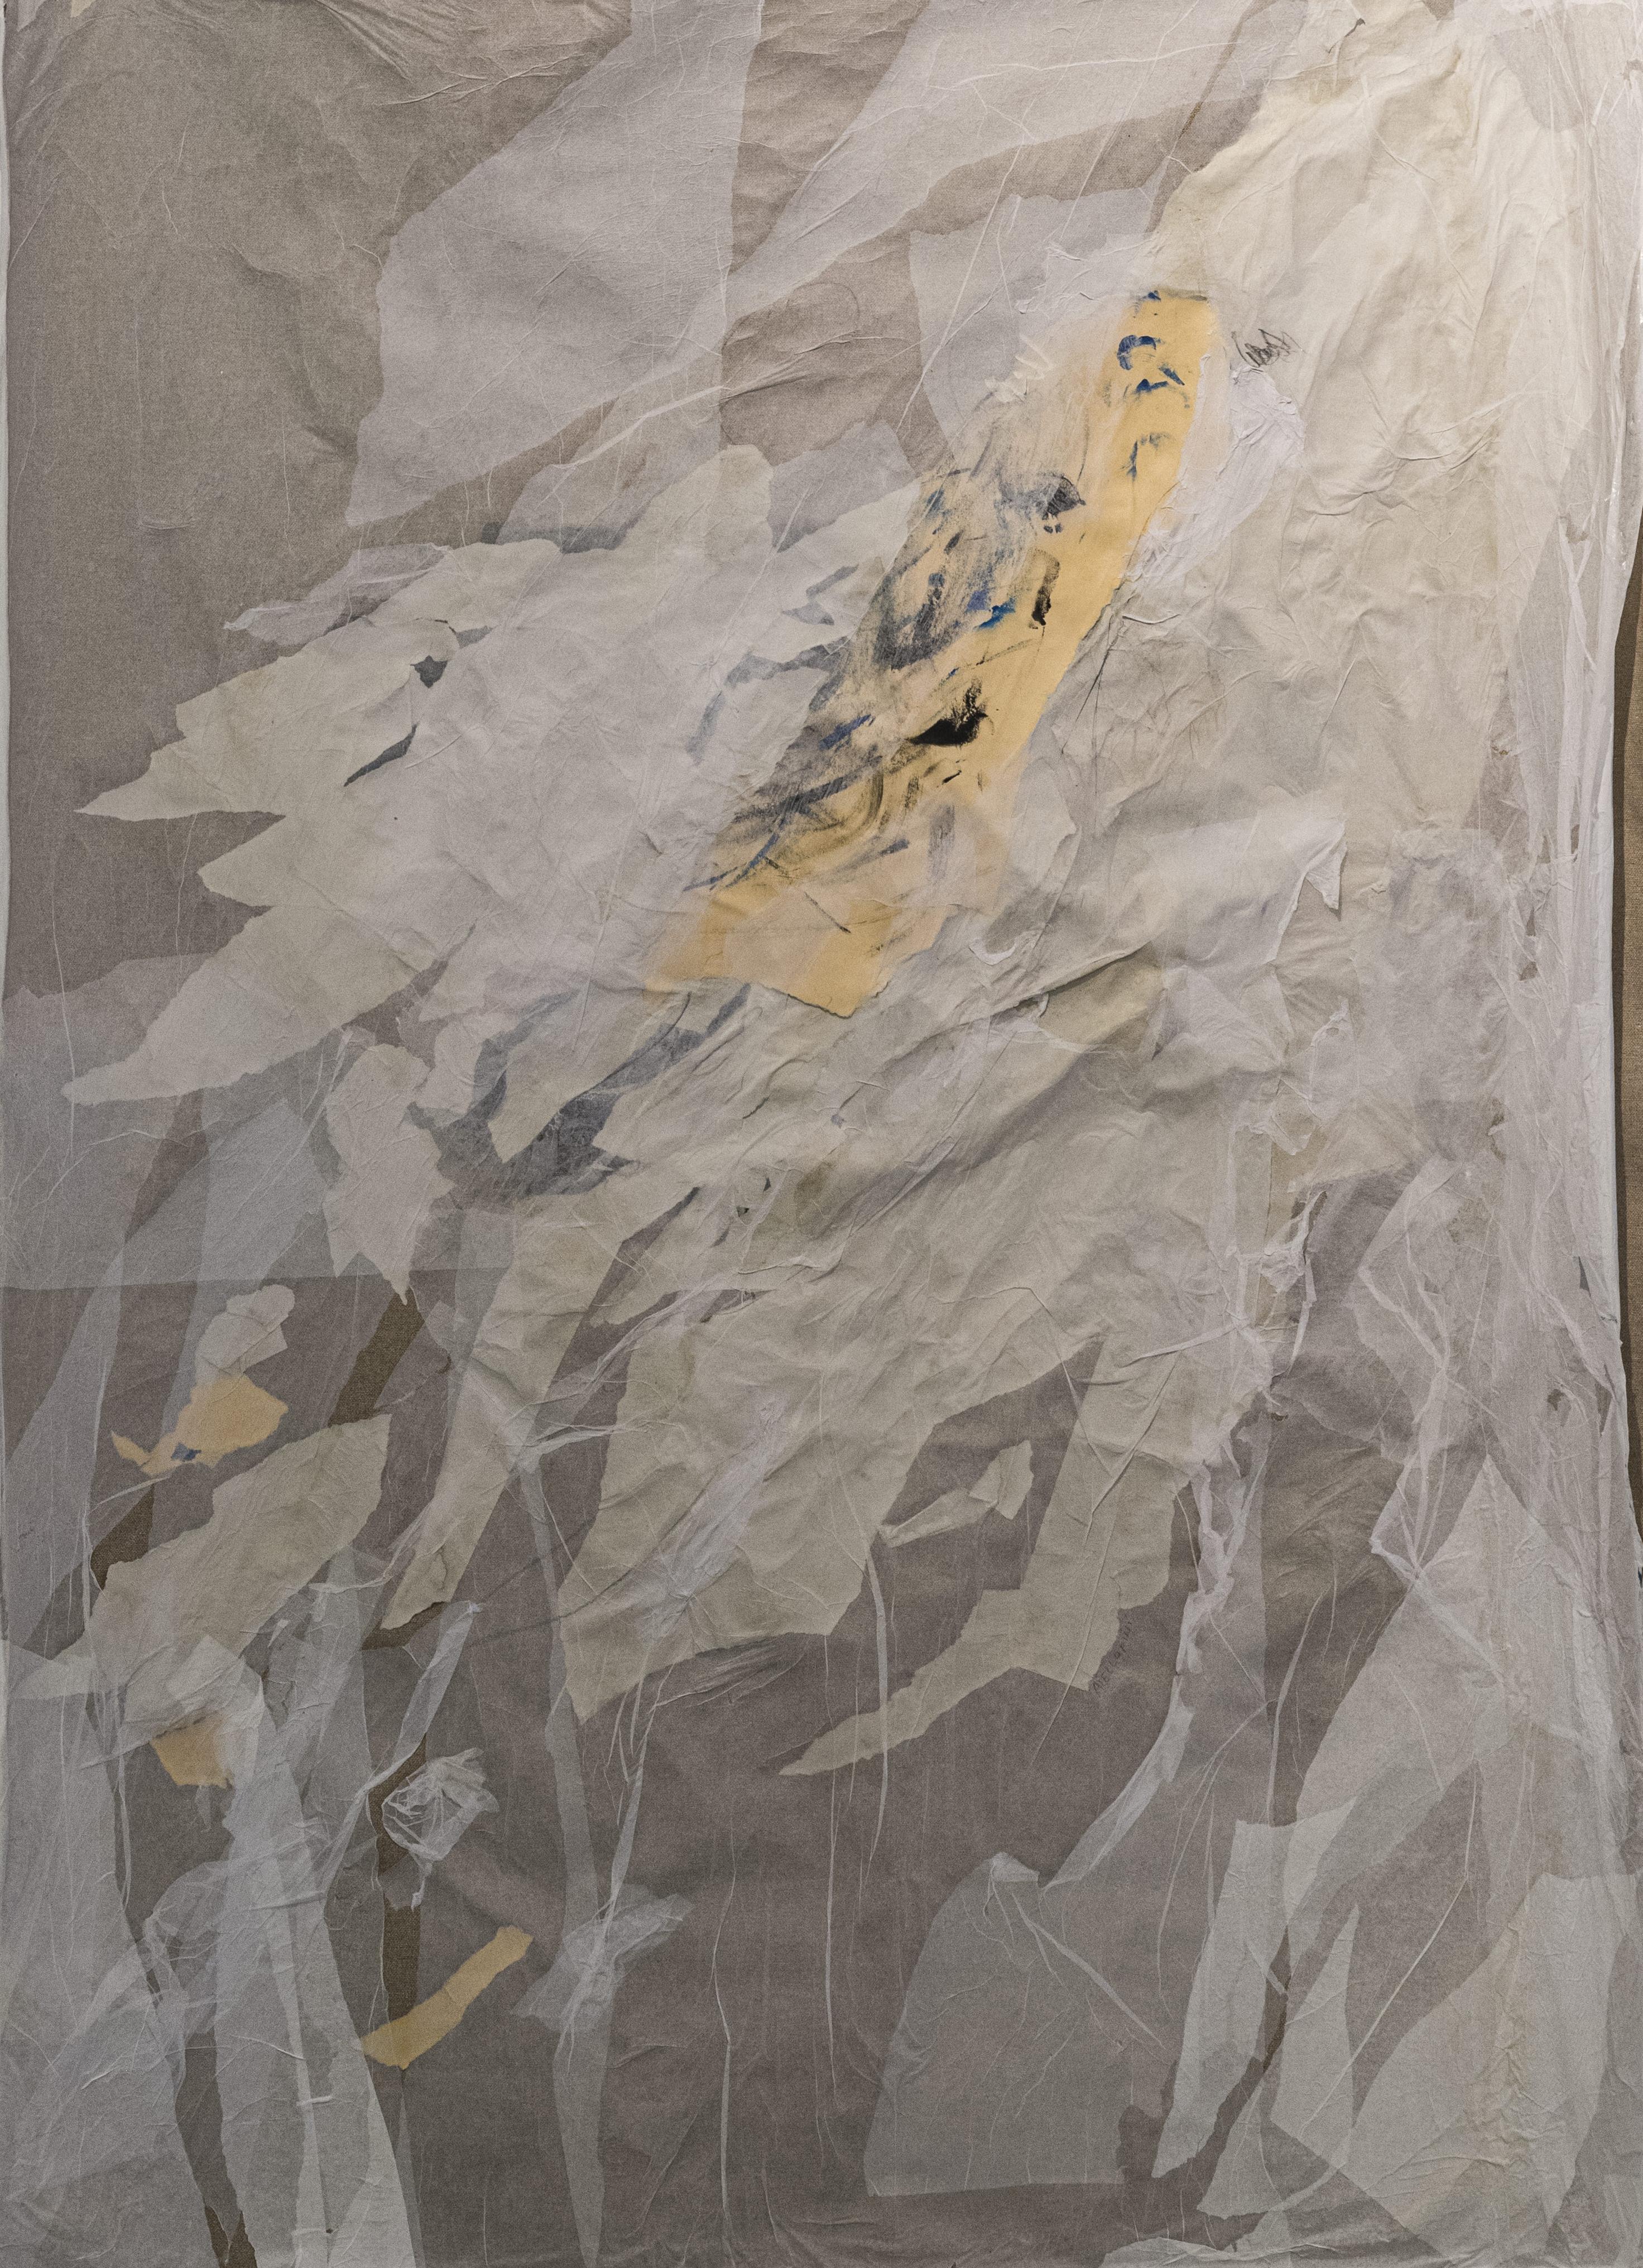 Modernes, elegantes und originelles Gemälde in Mischtechnik (Acryl, Pastell, Bleistift und Collage) auf ungespannter Leinwand mit unregelmäßiger Form.

Durch Überlagerungen und Transparenzen schafft die zeitgenössische Künstlerin Federica Aiello